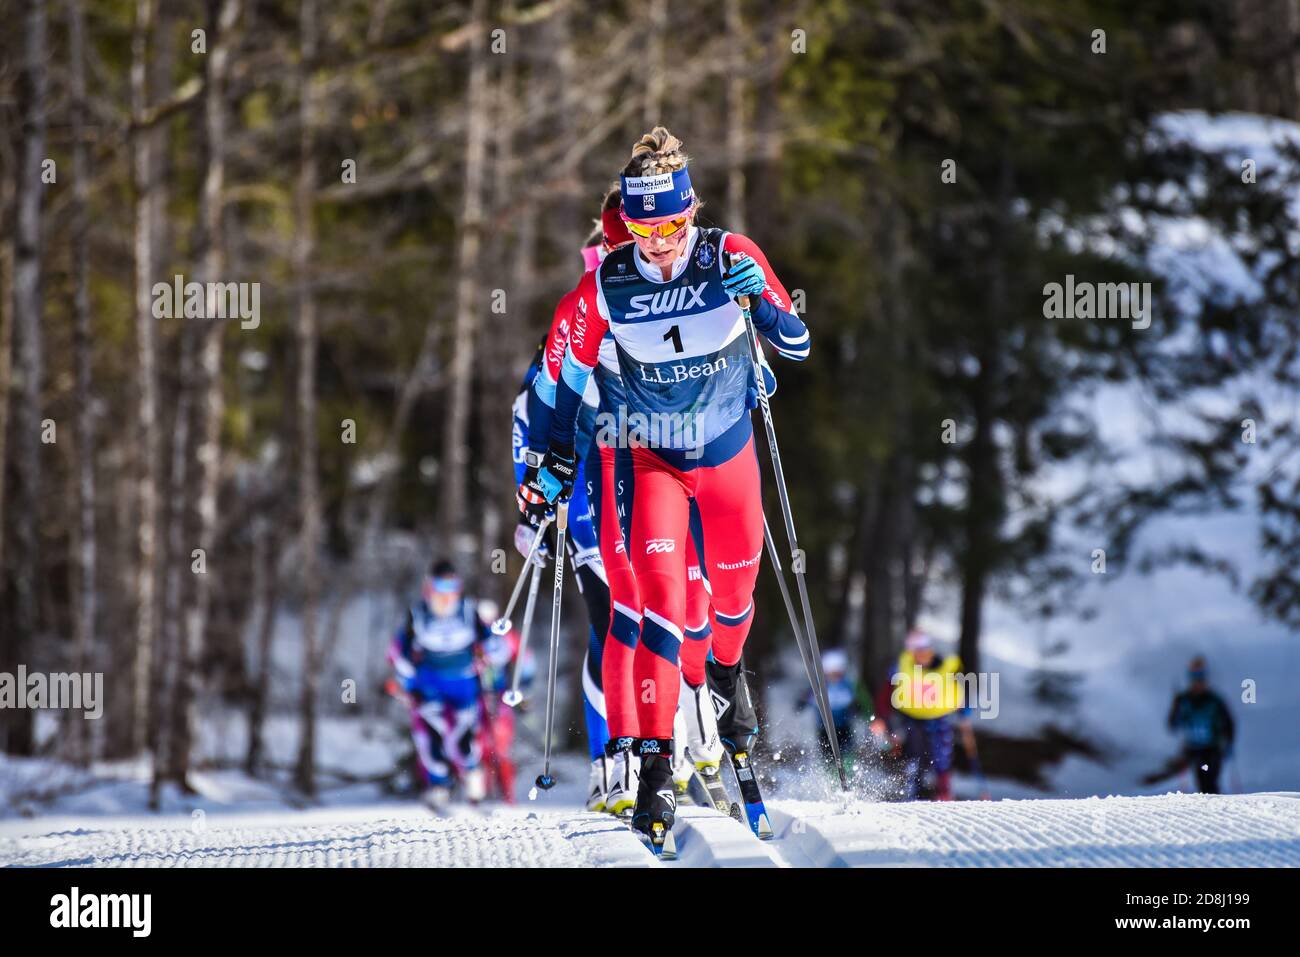 Jessie Diggins, miembro DEL equipo DE esquí DE EE.UU., lidera la carrera clásica de 30 kilómetros en las finales de Super Tour 2018, Craftsbury, Vermont, EE.UU Foto de stock